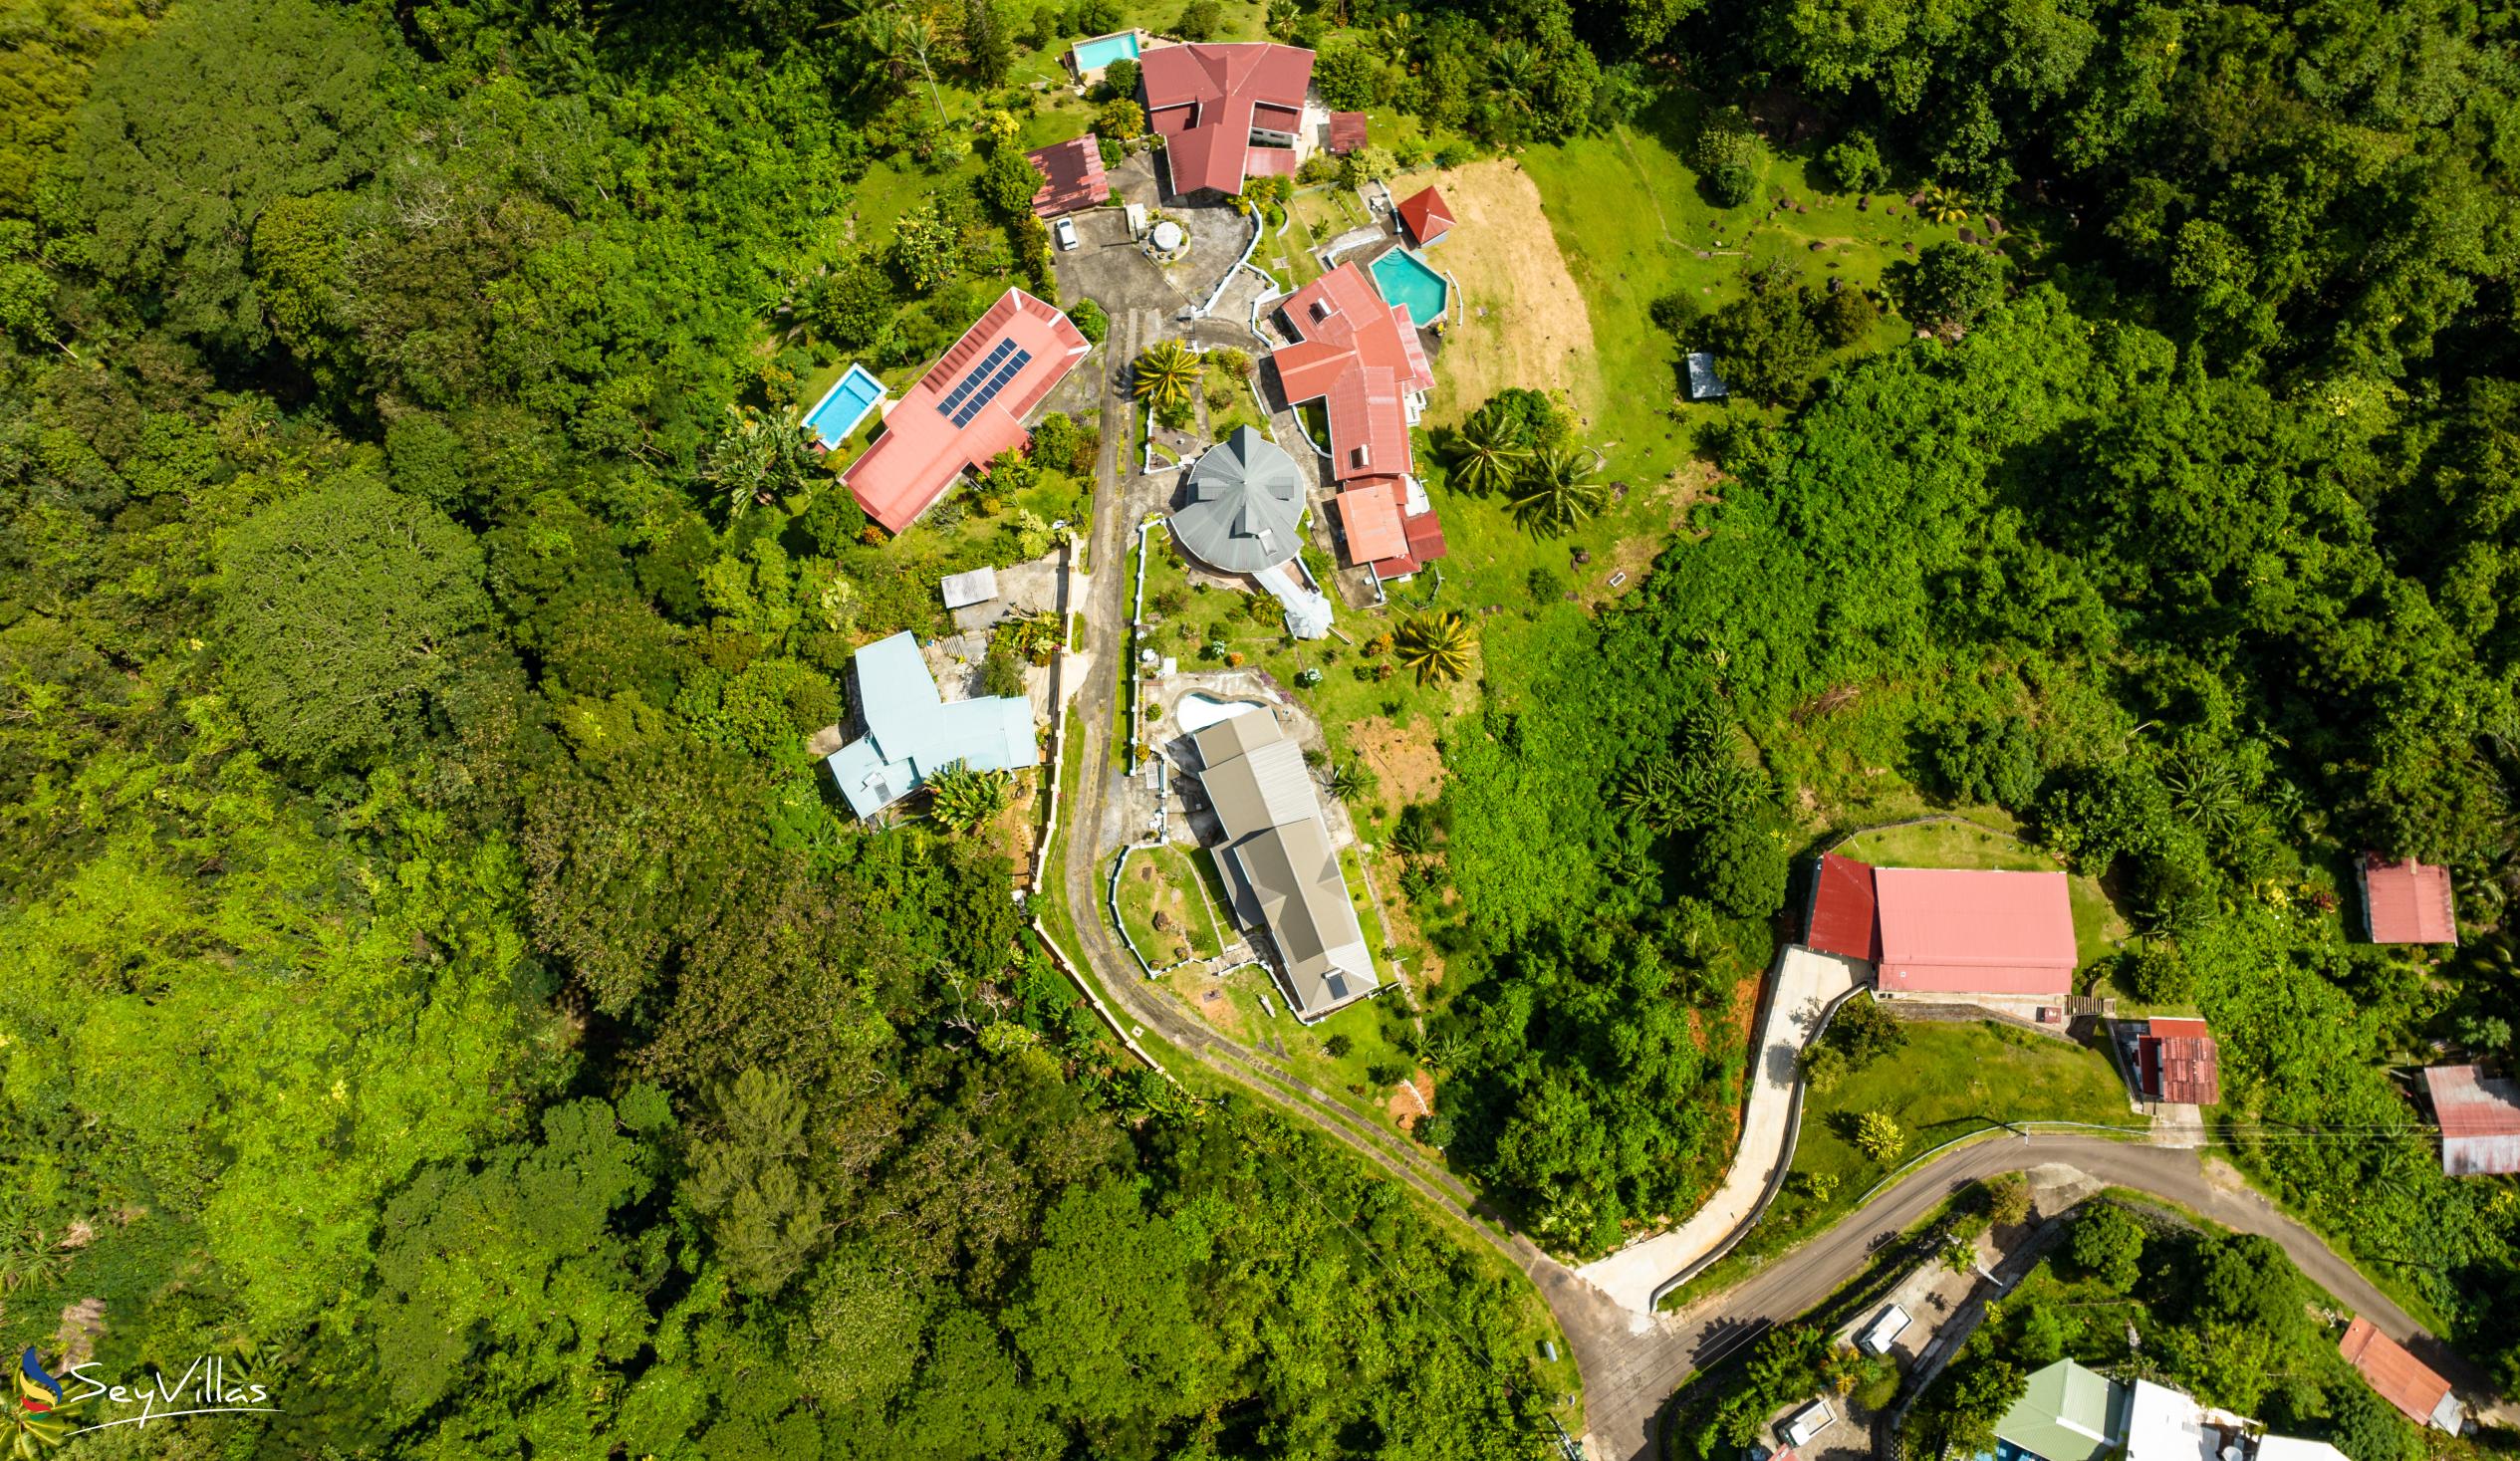 Photo 10: Casuarina Hill Villa - Outdoor area - Mahé (Seychelles)